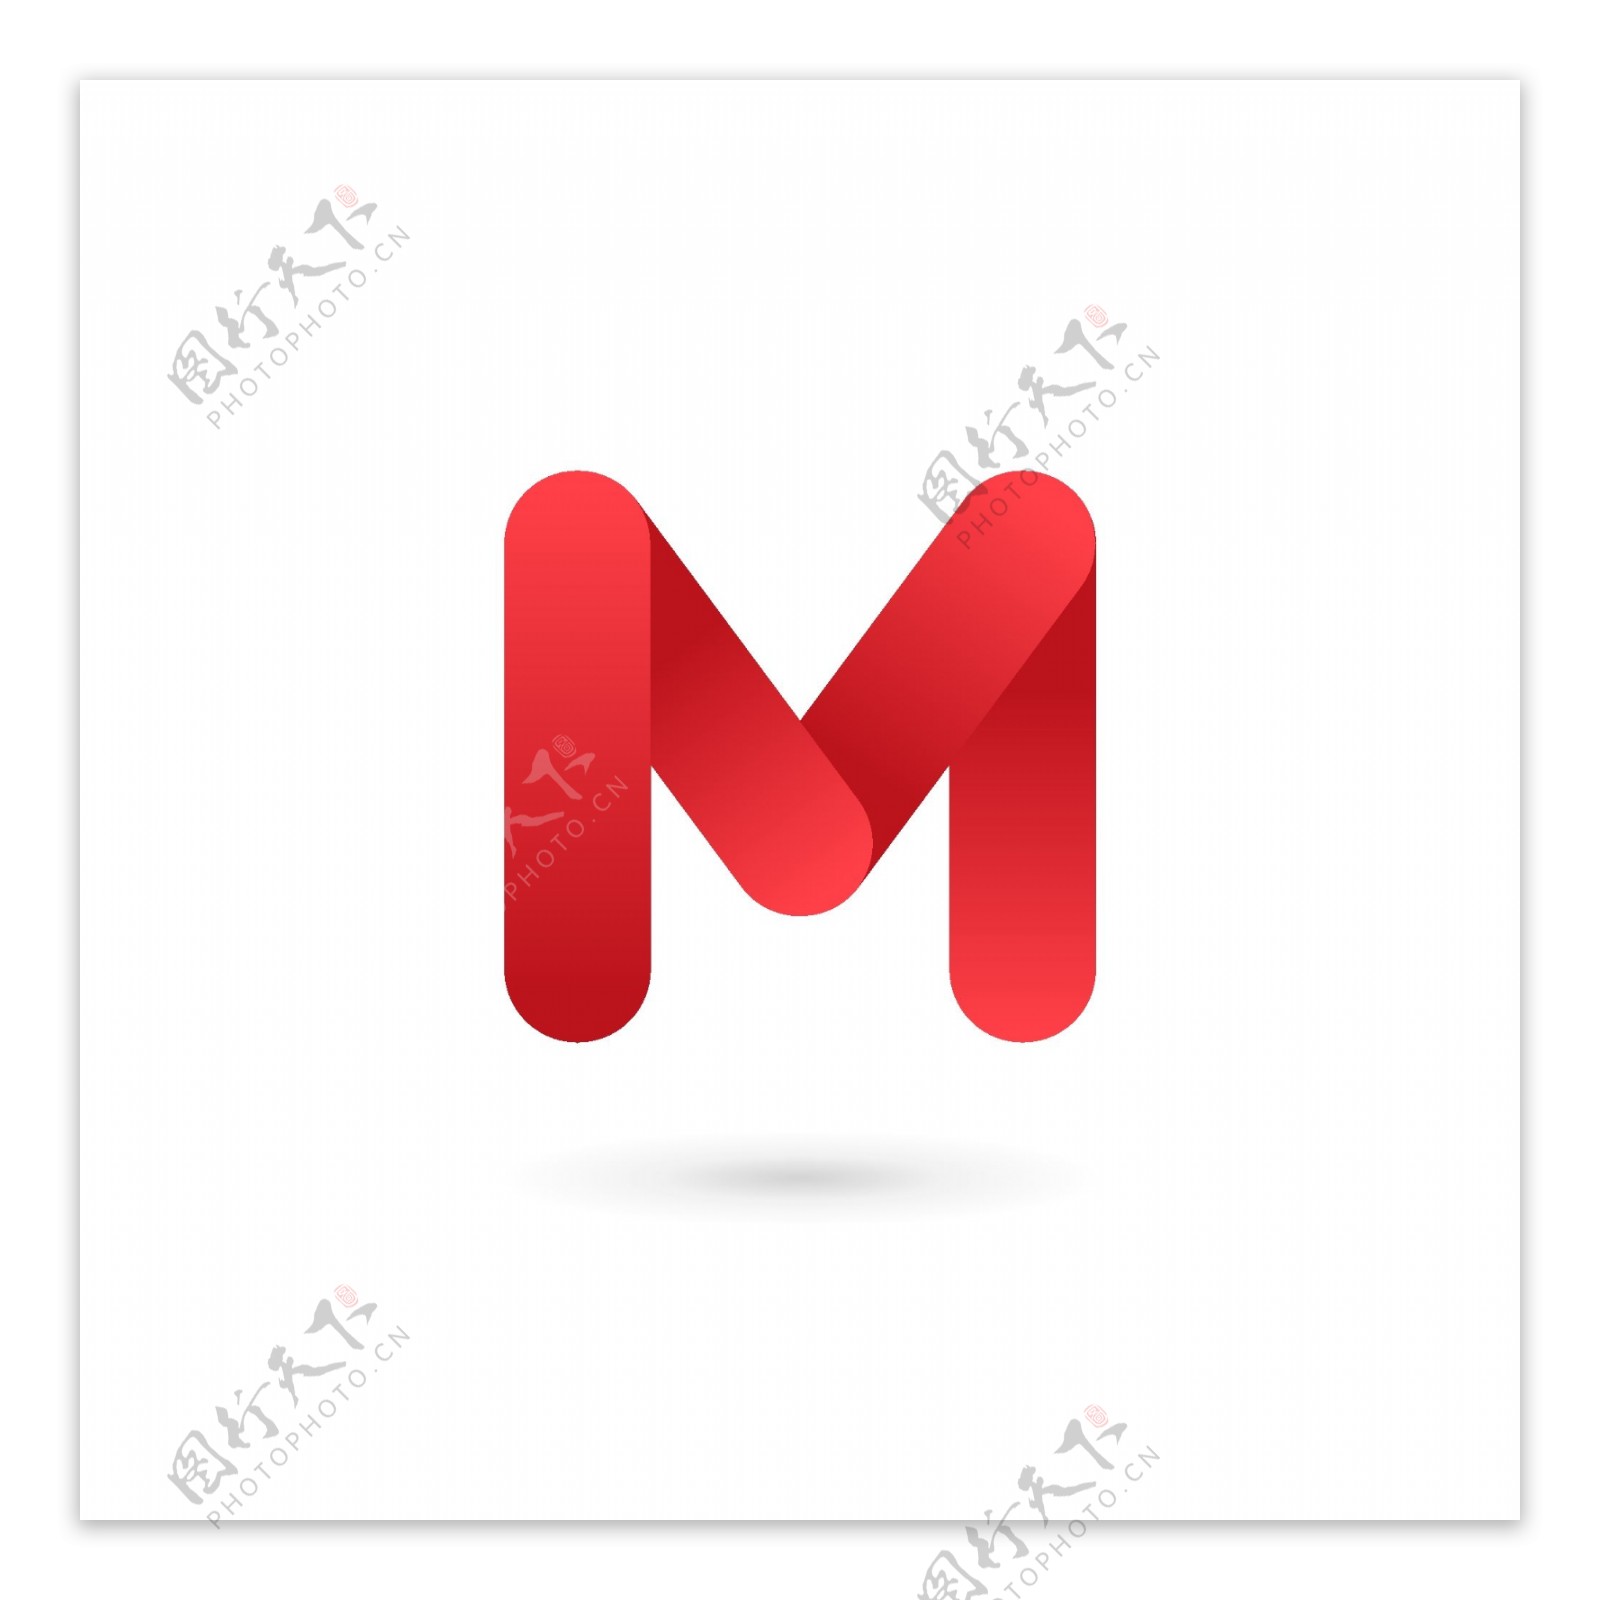 互联网邮箱logo红色简约logo